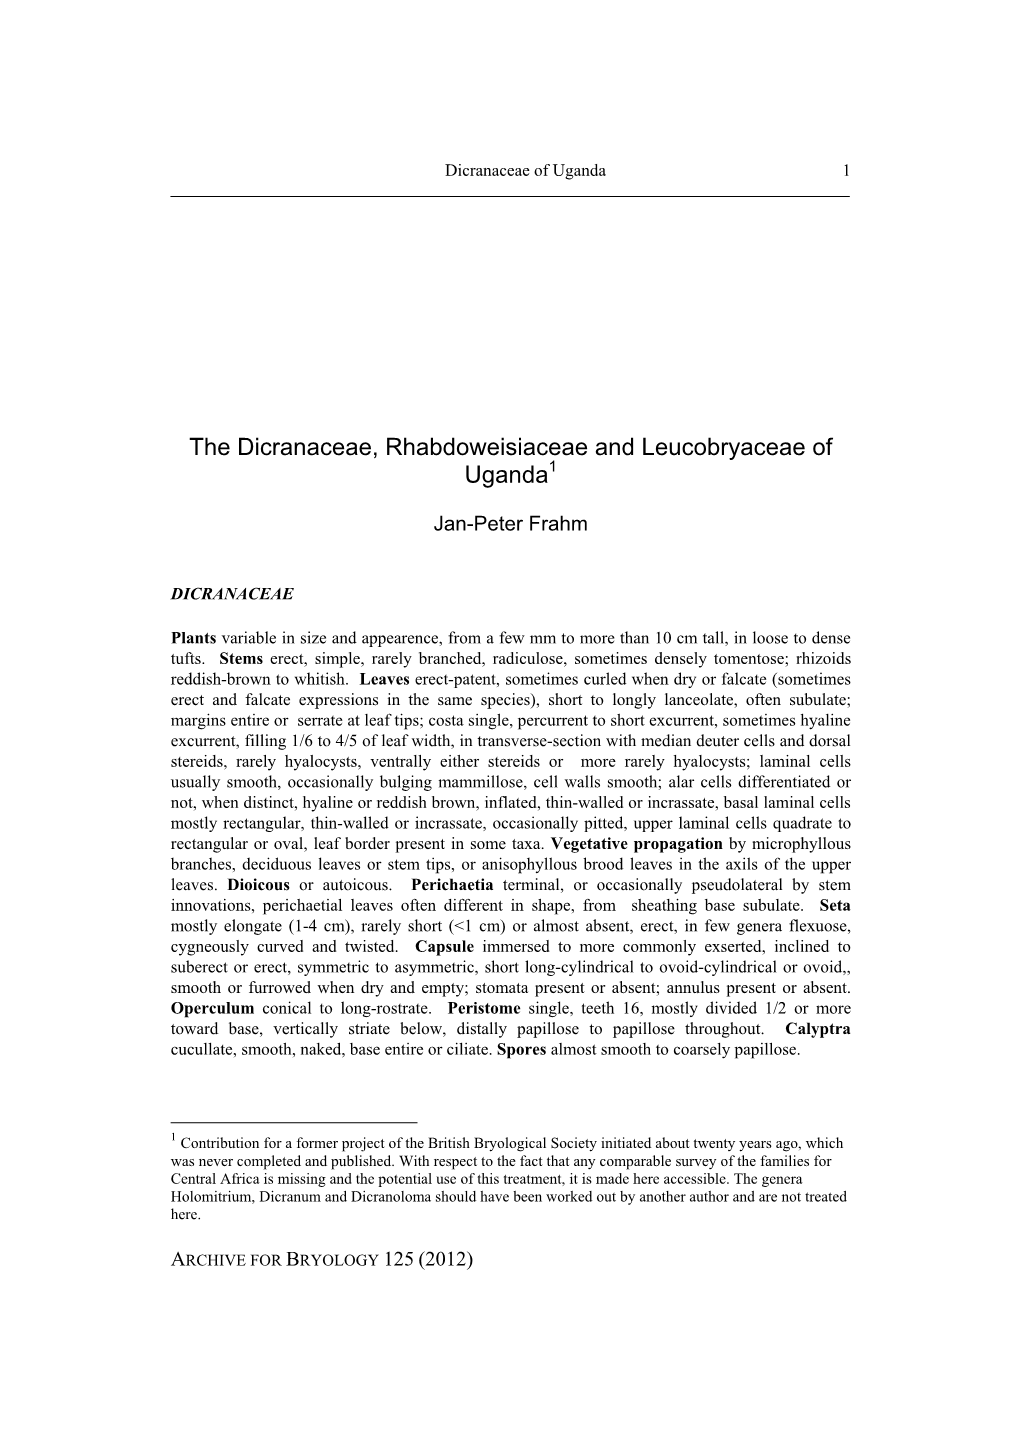 The Dicranaceae, Rhabdoweisiaceae and Leucobryaceae of Uganda1